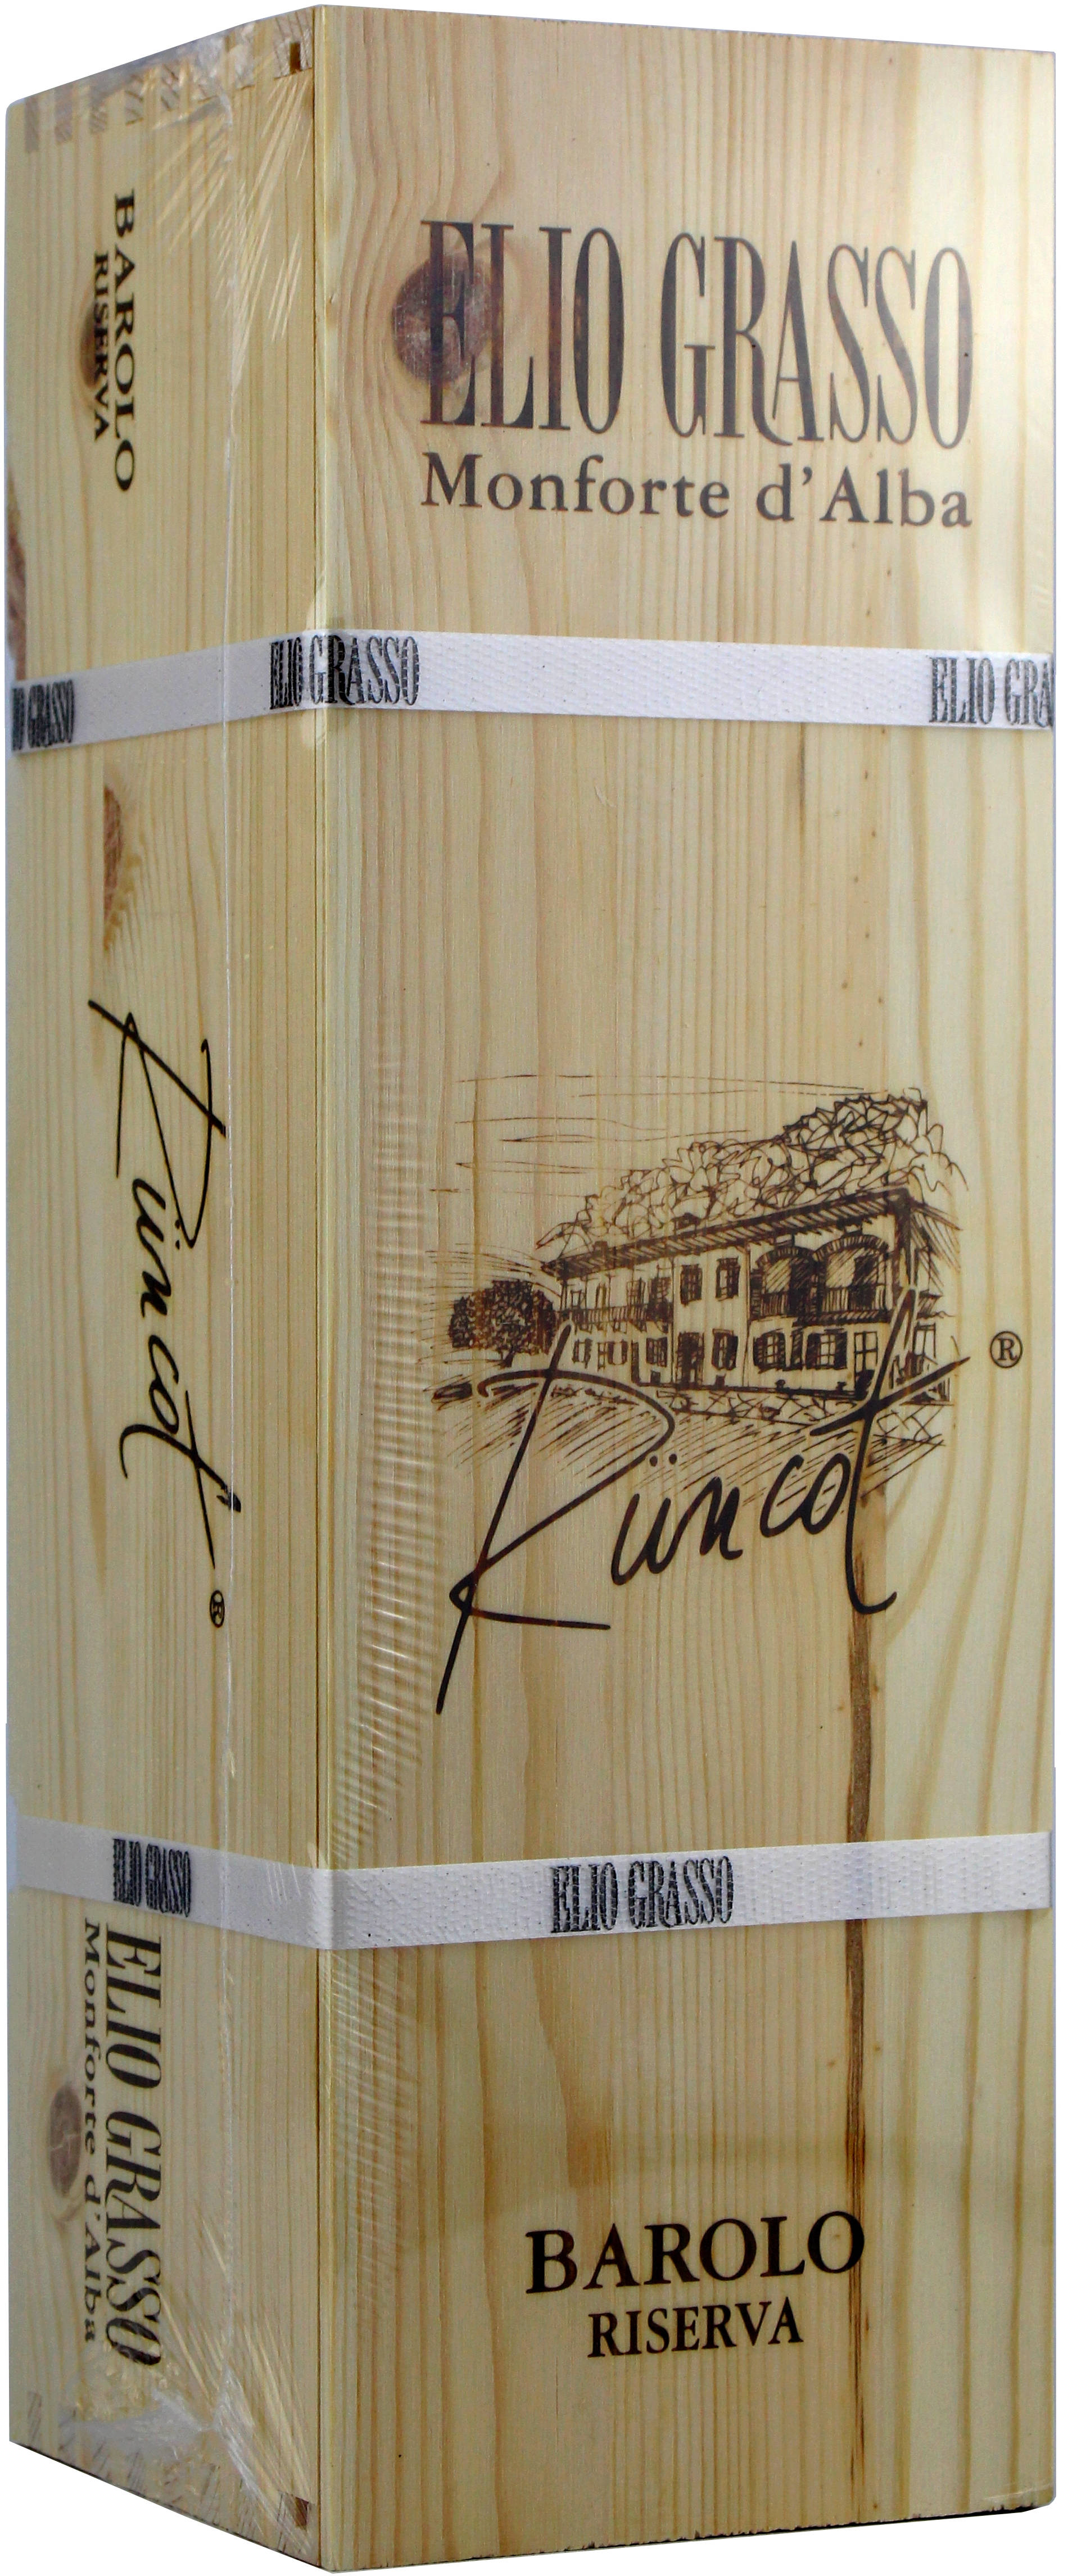 Elio Grasso, 2015 Barolo DOCG Riserva 'Rüncot' Magnum, Rotwein, Piemont,  Italien | Wein Direktimport Scholz